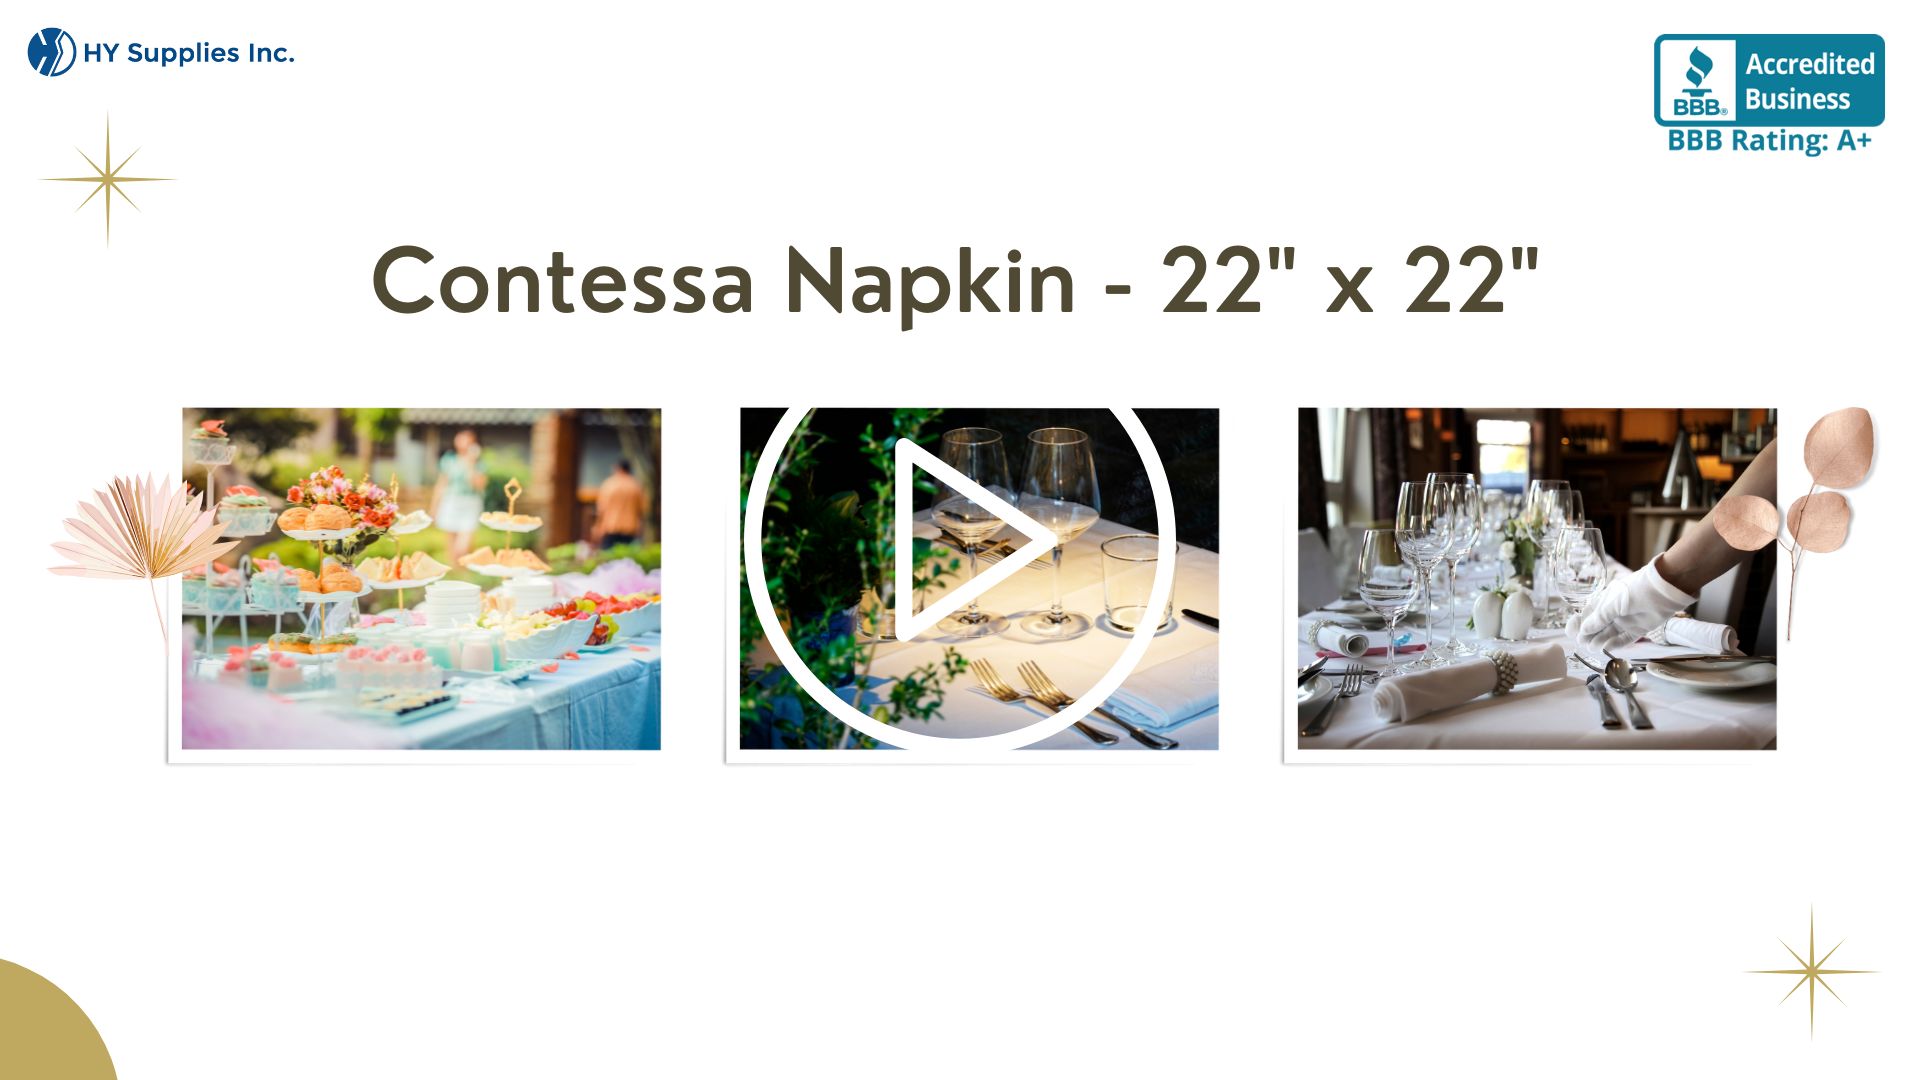 Contessa Napkin - 22" x 22"